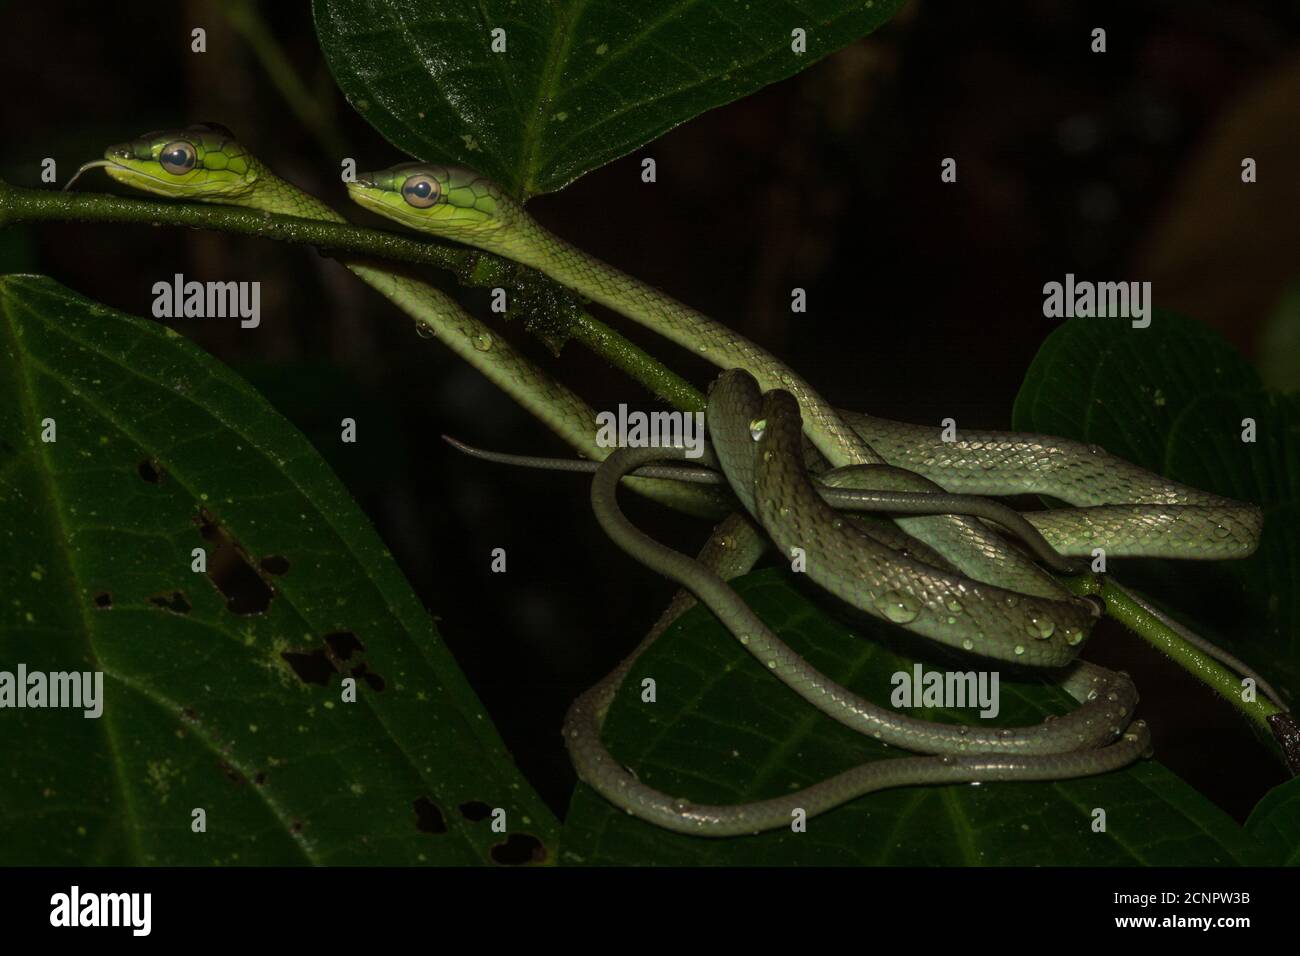 Les serpents de Cope (Oxybelis brevirostris) s'enroulent ensemble sur une branche d'arbre dans la forêt équatoriale équatorienne. Banque D'Images